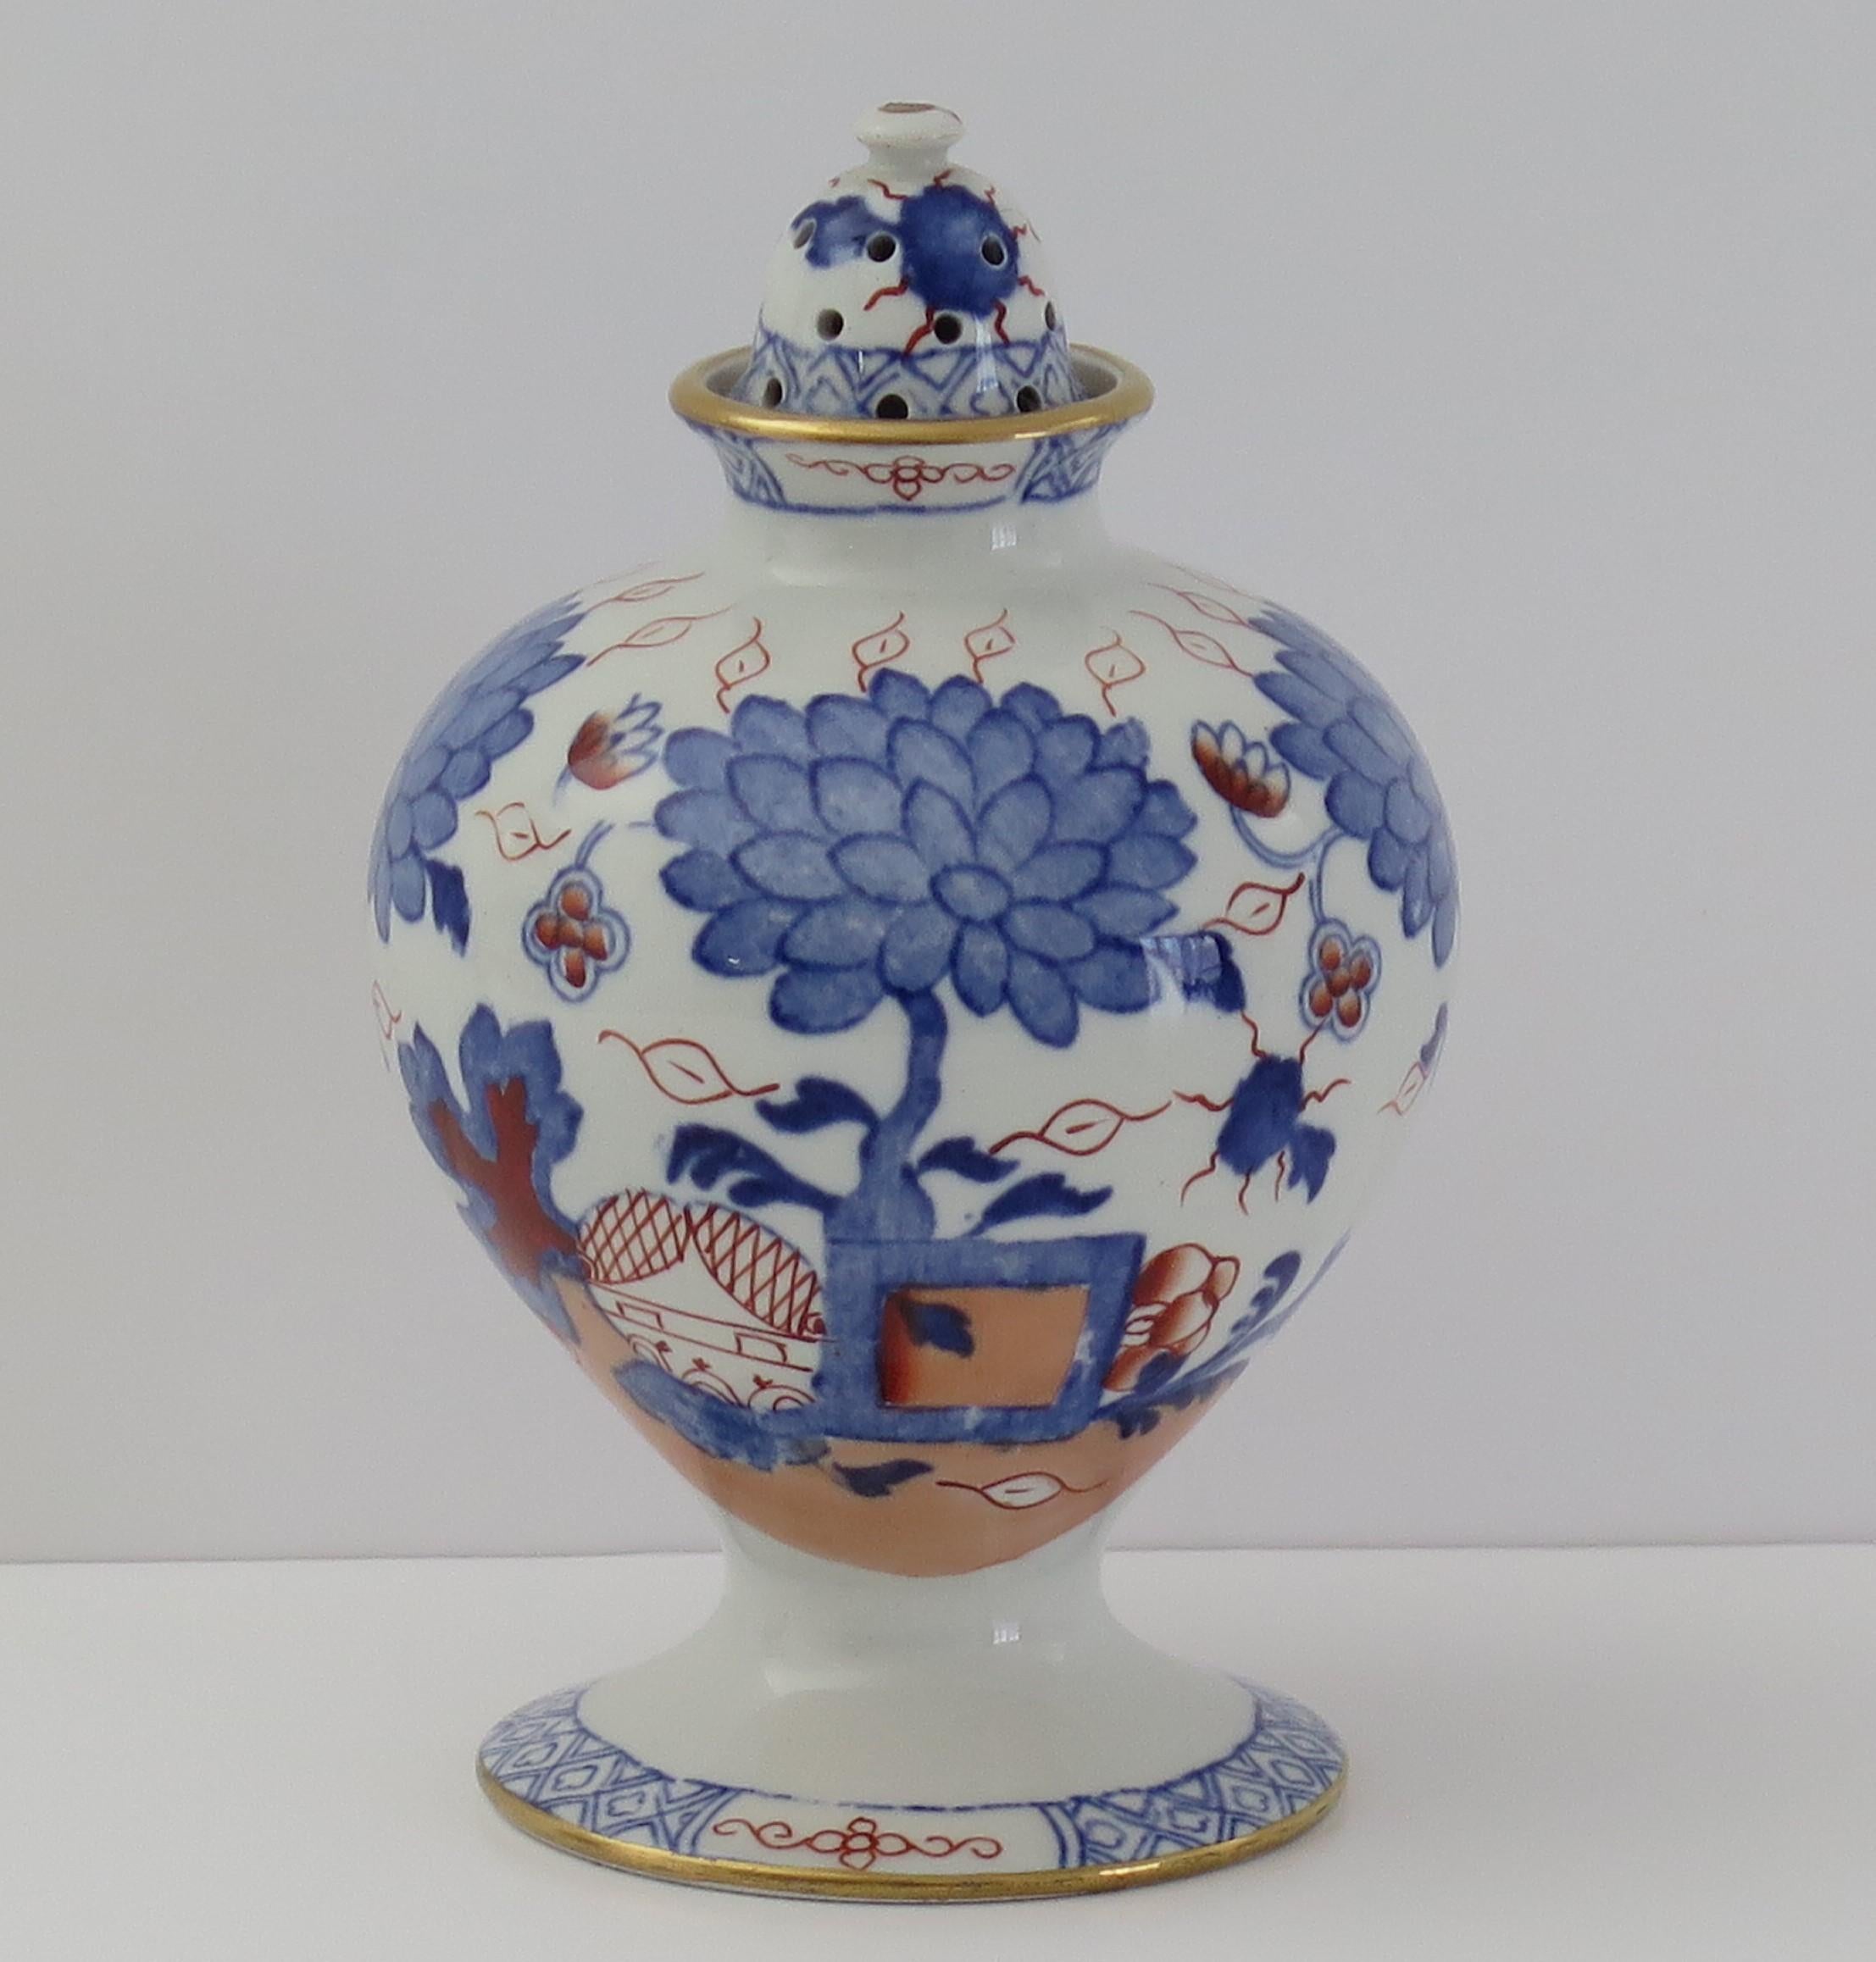 Dies ist eine seltene Pot-Pourri-Vase mit Deckel, handbemalt im Jardiniere-Muster, hergestellt von Mason's Ironstone, Lane Delph, England, aus der Zeit um 1890.

Es handelt sich um ein seltenes Stück in Form einer kugelförmigen Vase mit schmalem